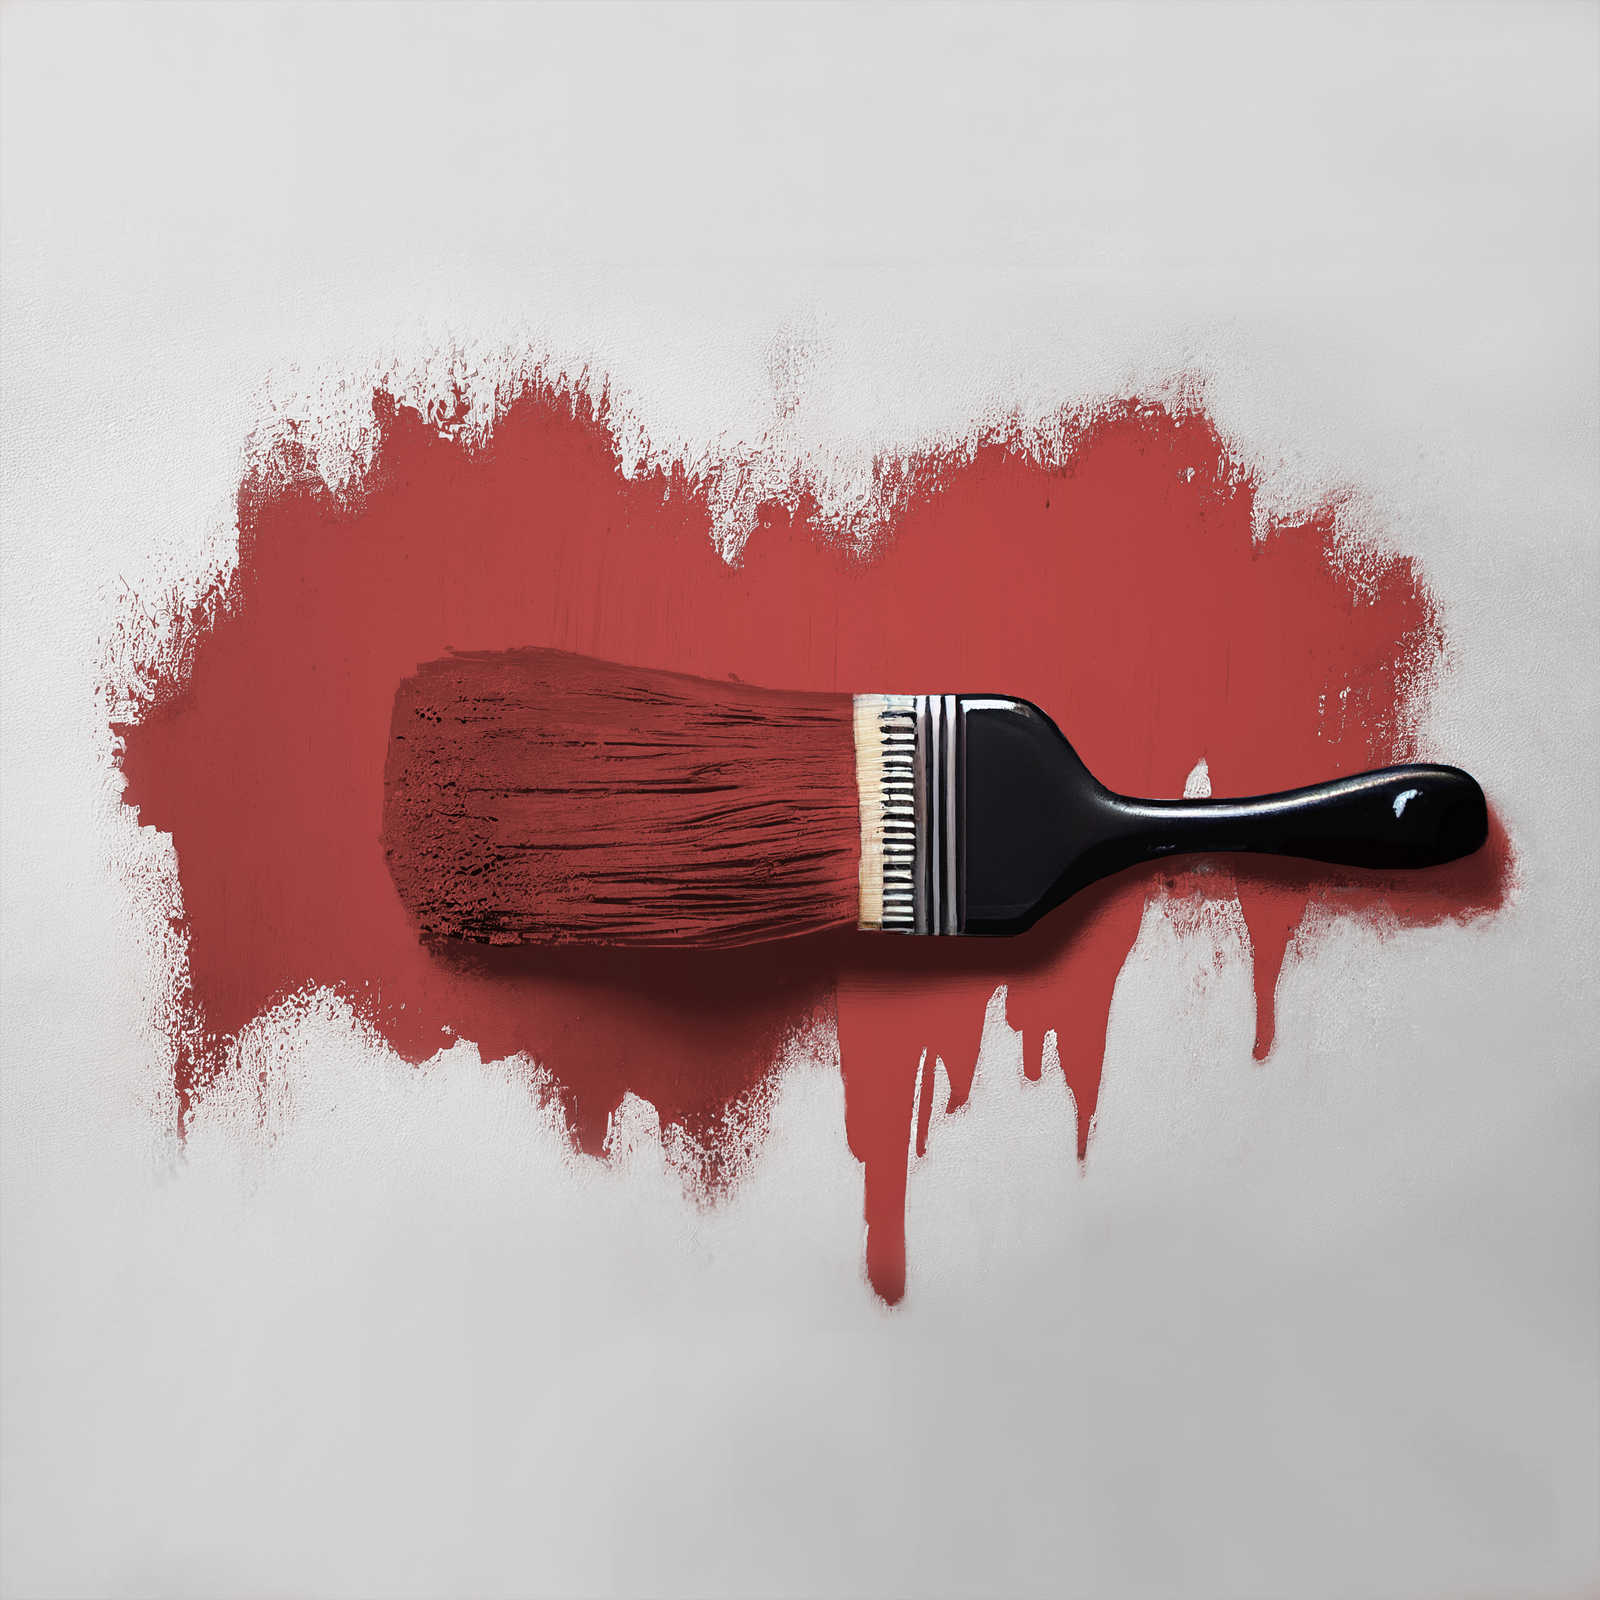             Pittura murale TCK7005 »Cheeky Chilli« in rosso fuoco forte – 2,5 litri
        